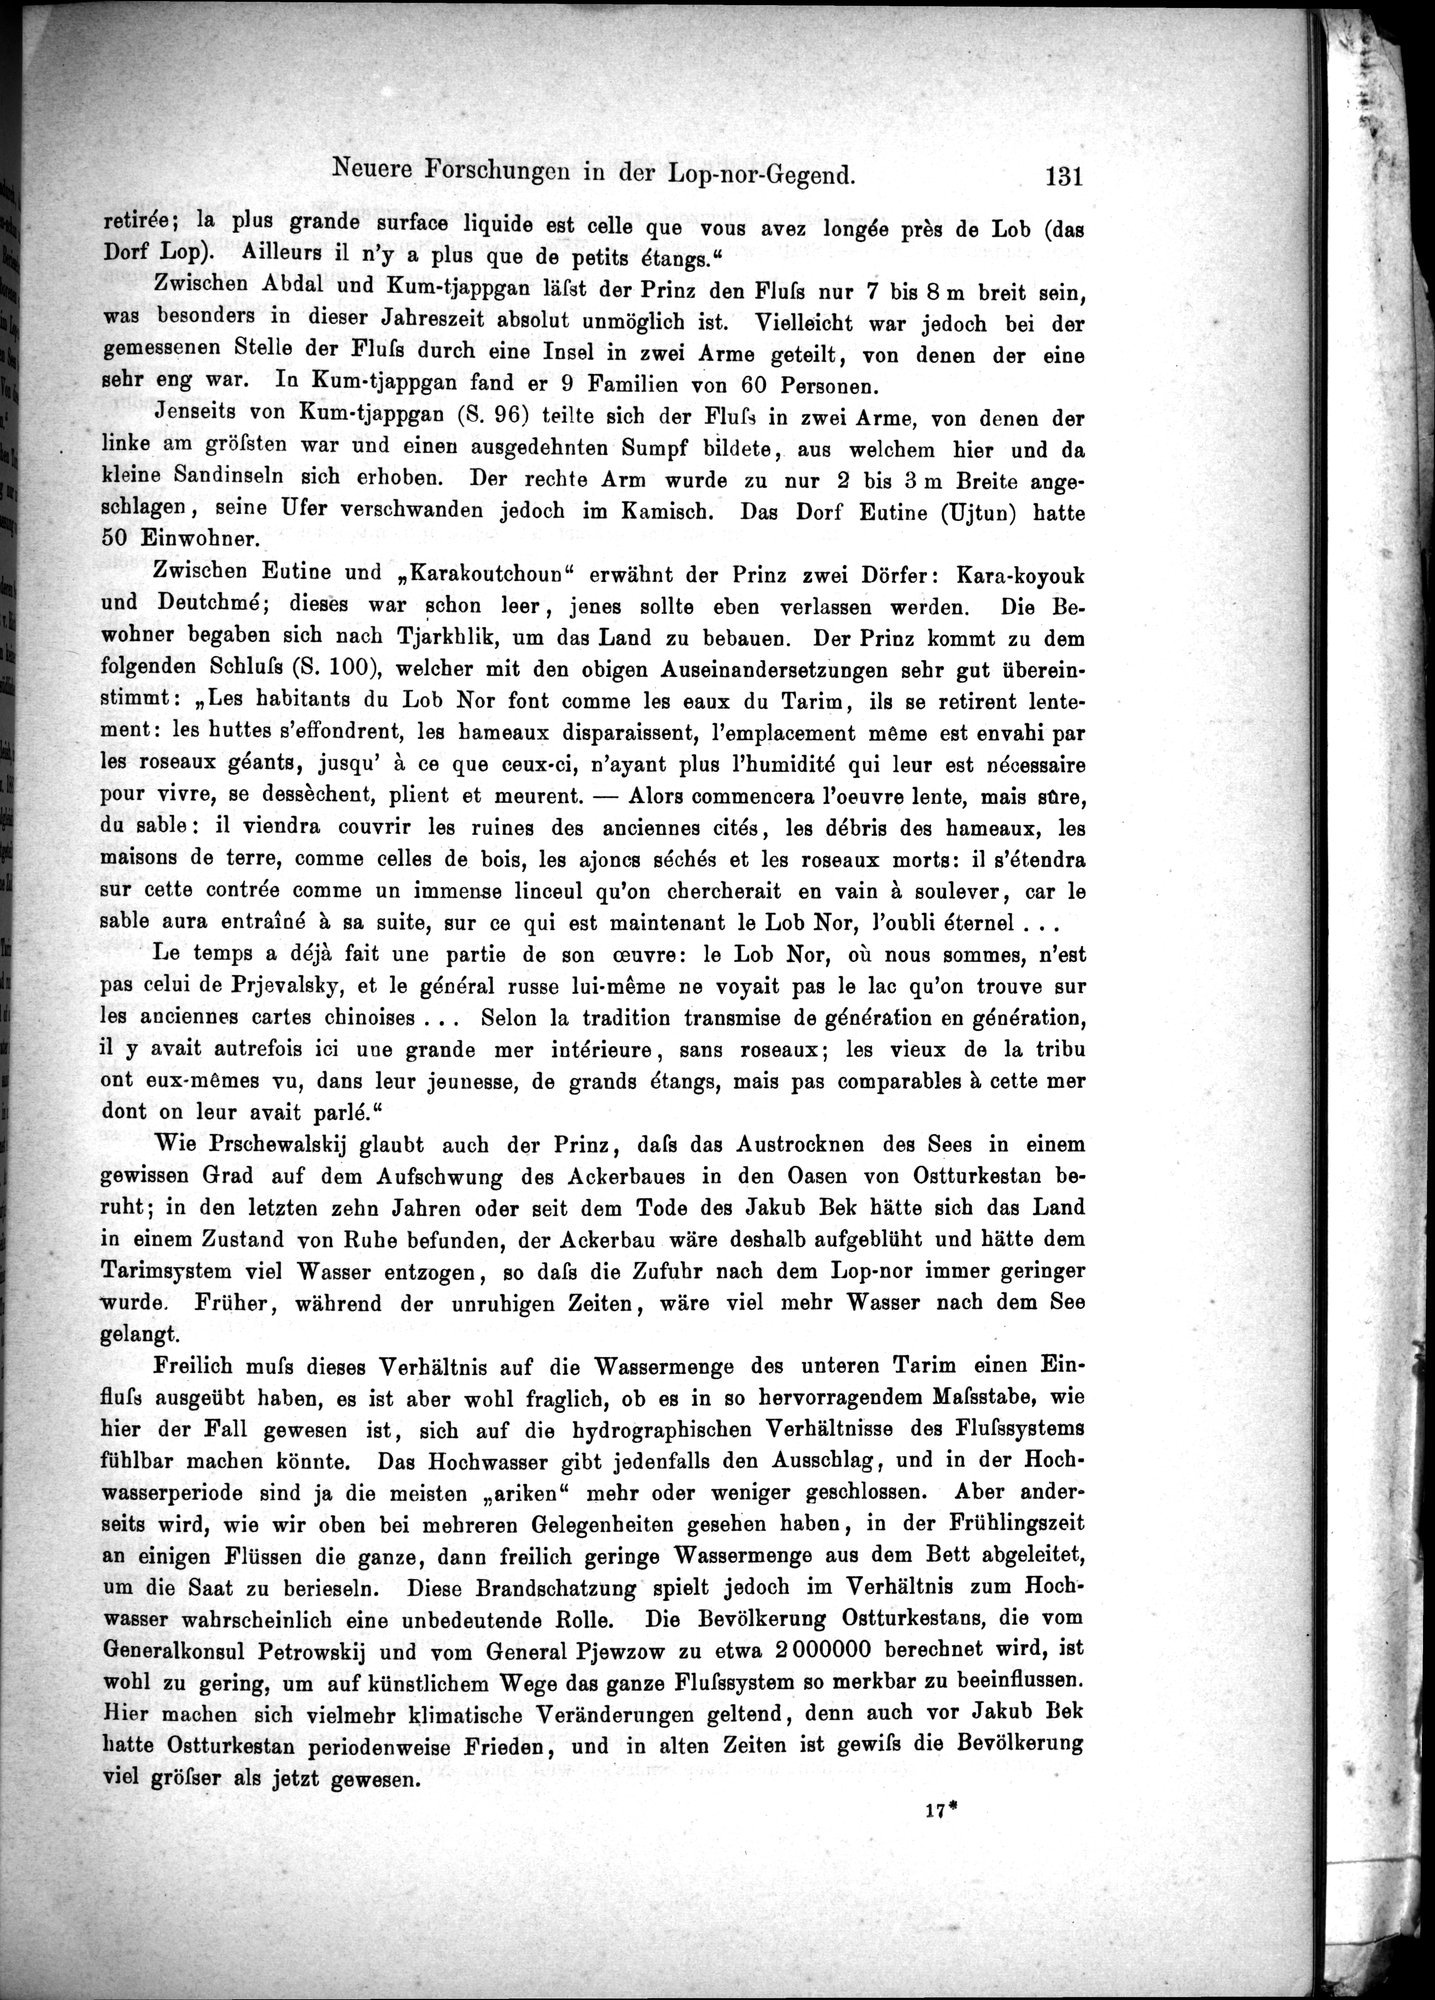 Die Geographische-Wissenschaftlichen Ergebnisse meiner Reisen in Zentralasien, 1894-1897 : vol.1 / Page 143 (Grayscale High Resolution Image)